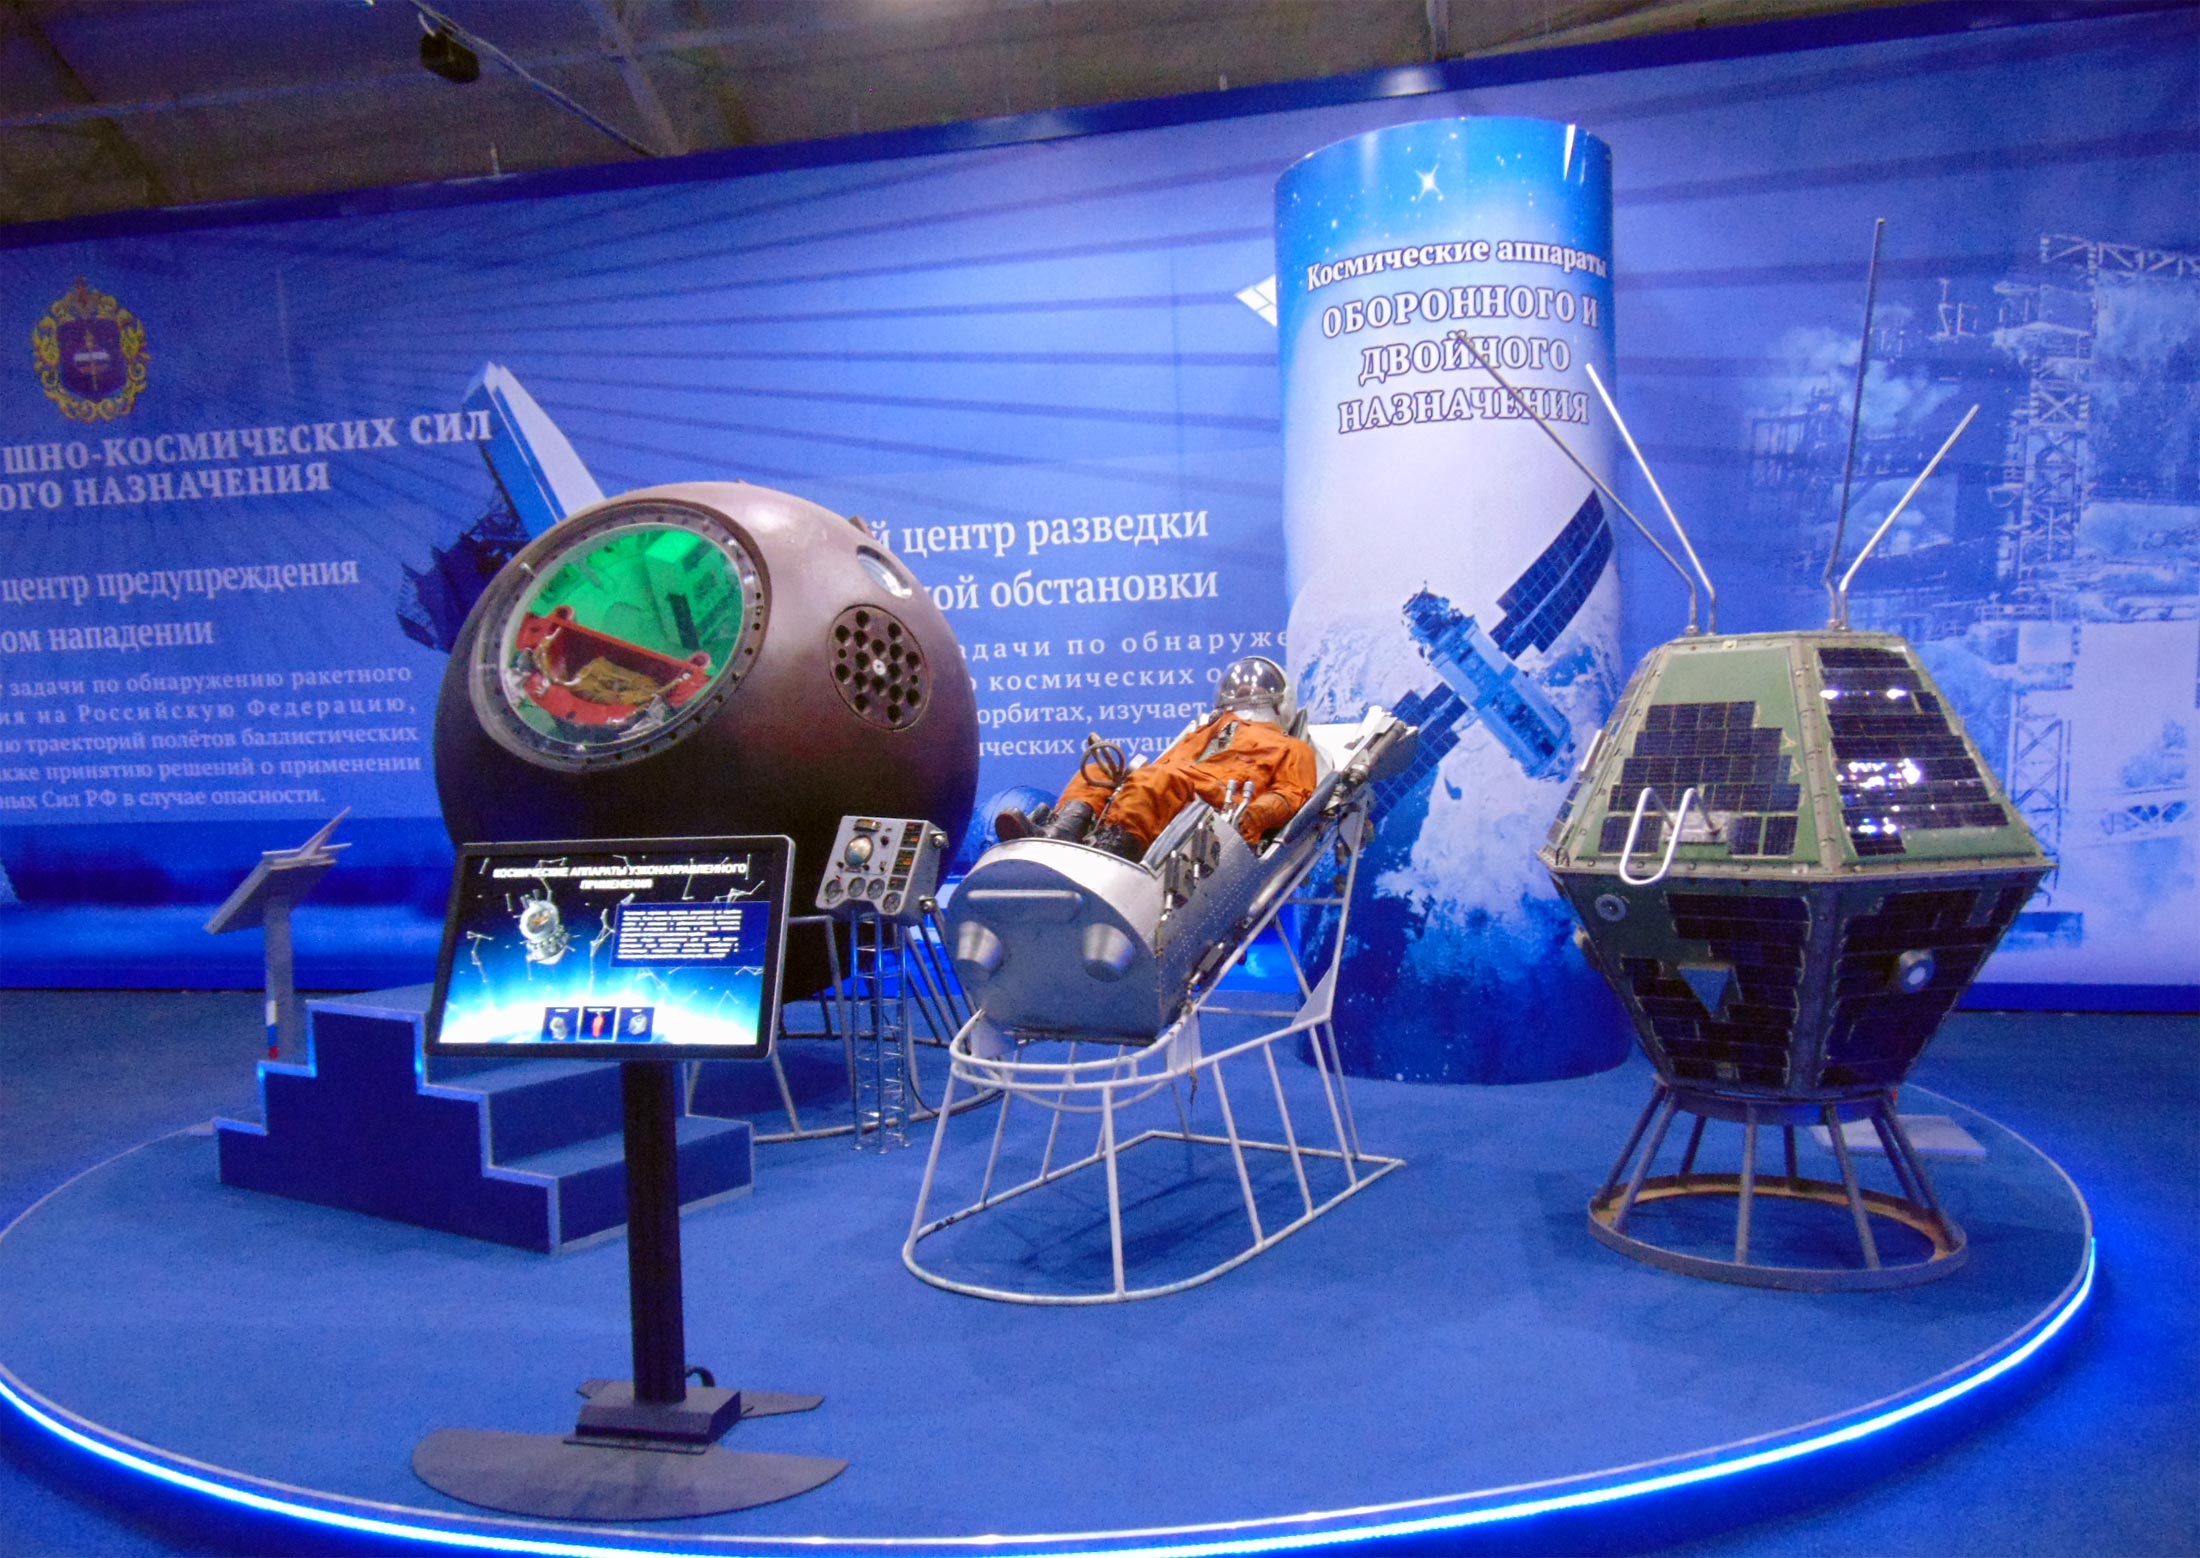 Gagarin spacecraft exhibition